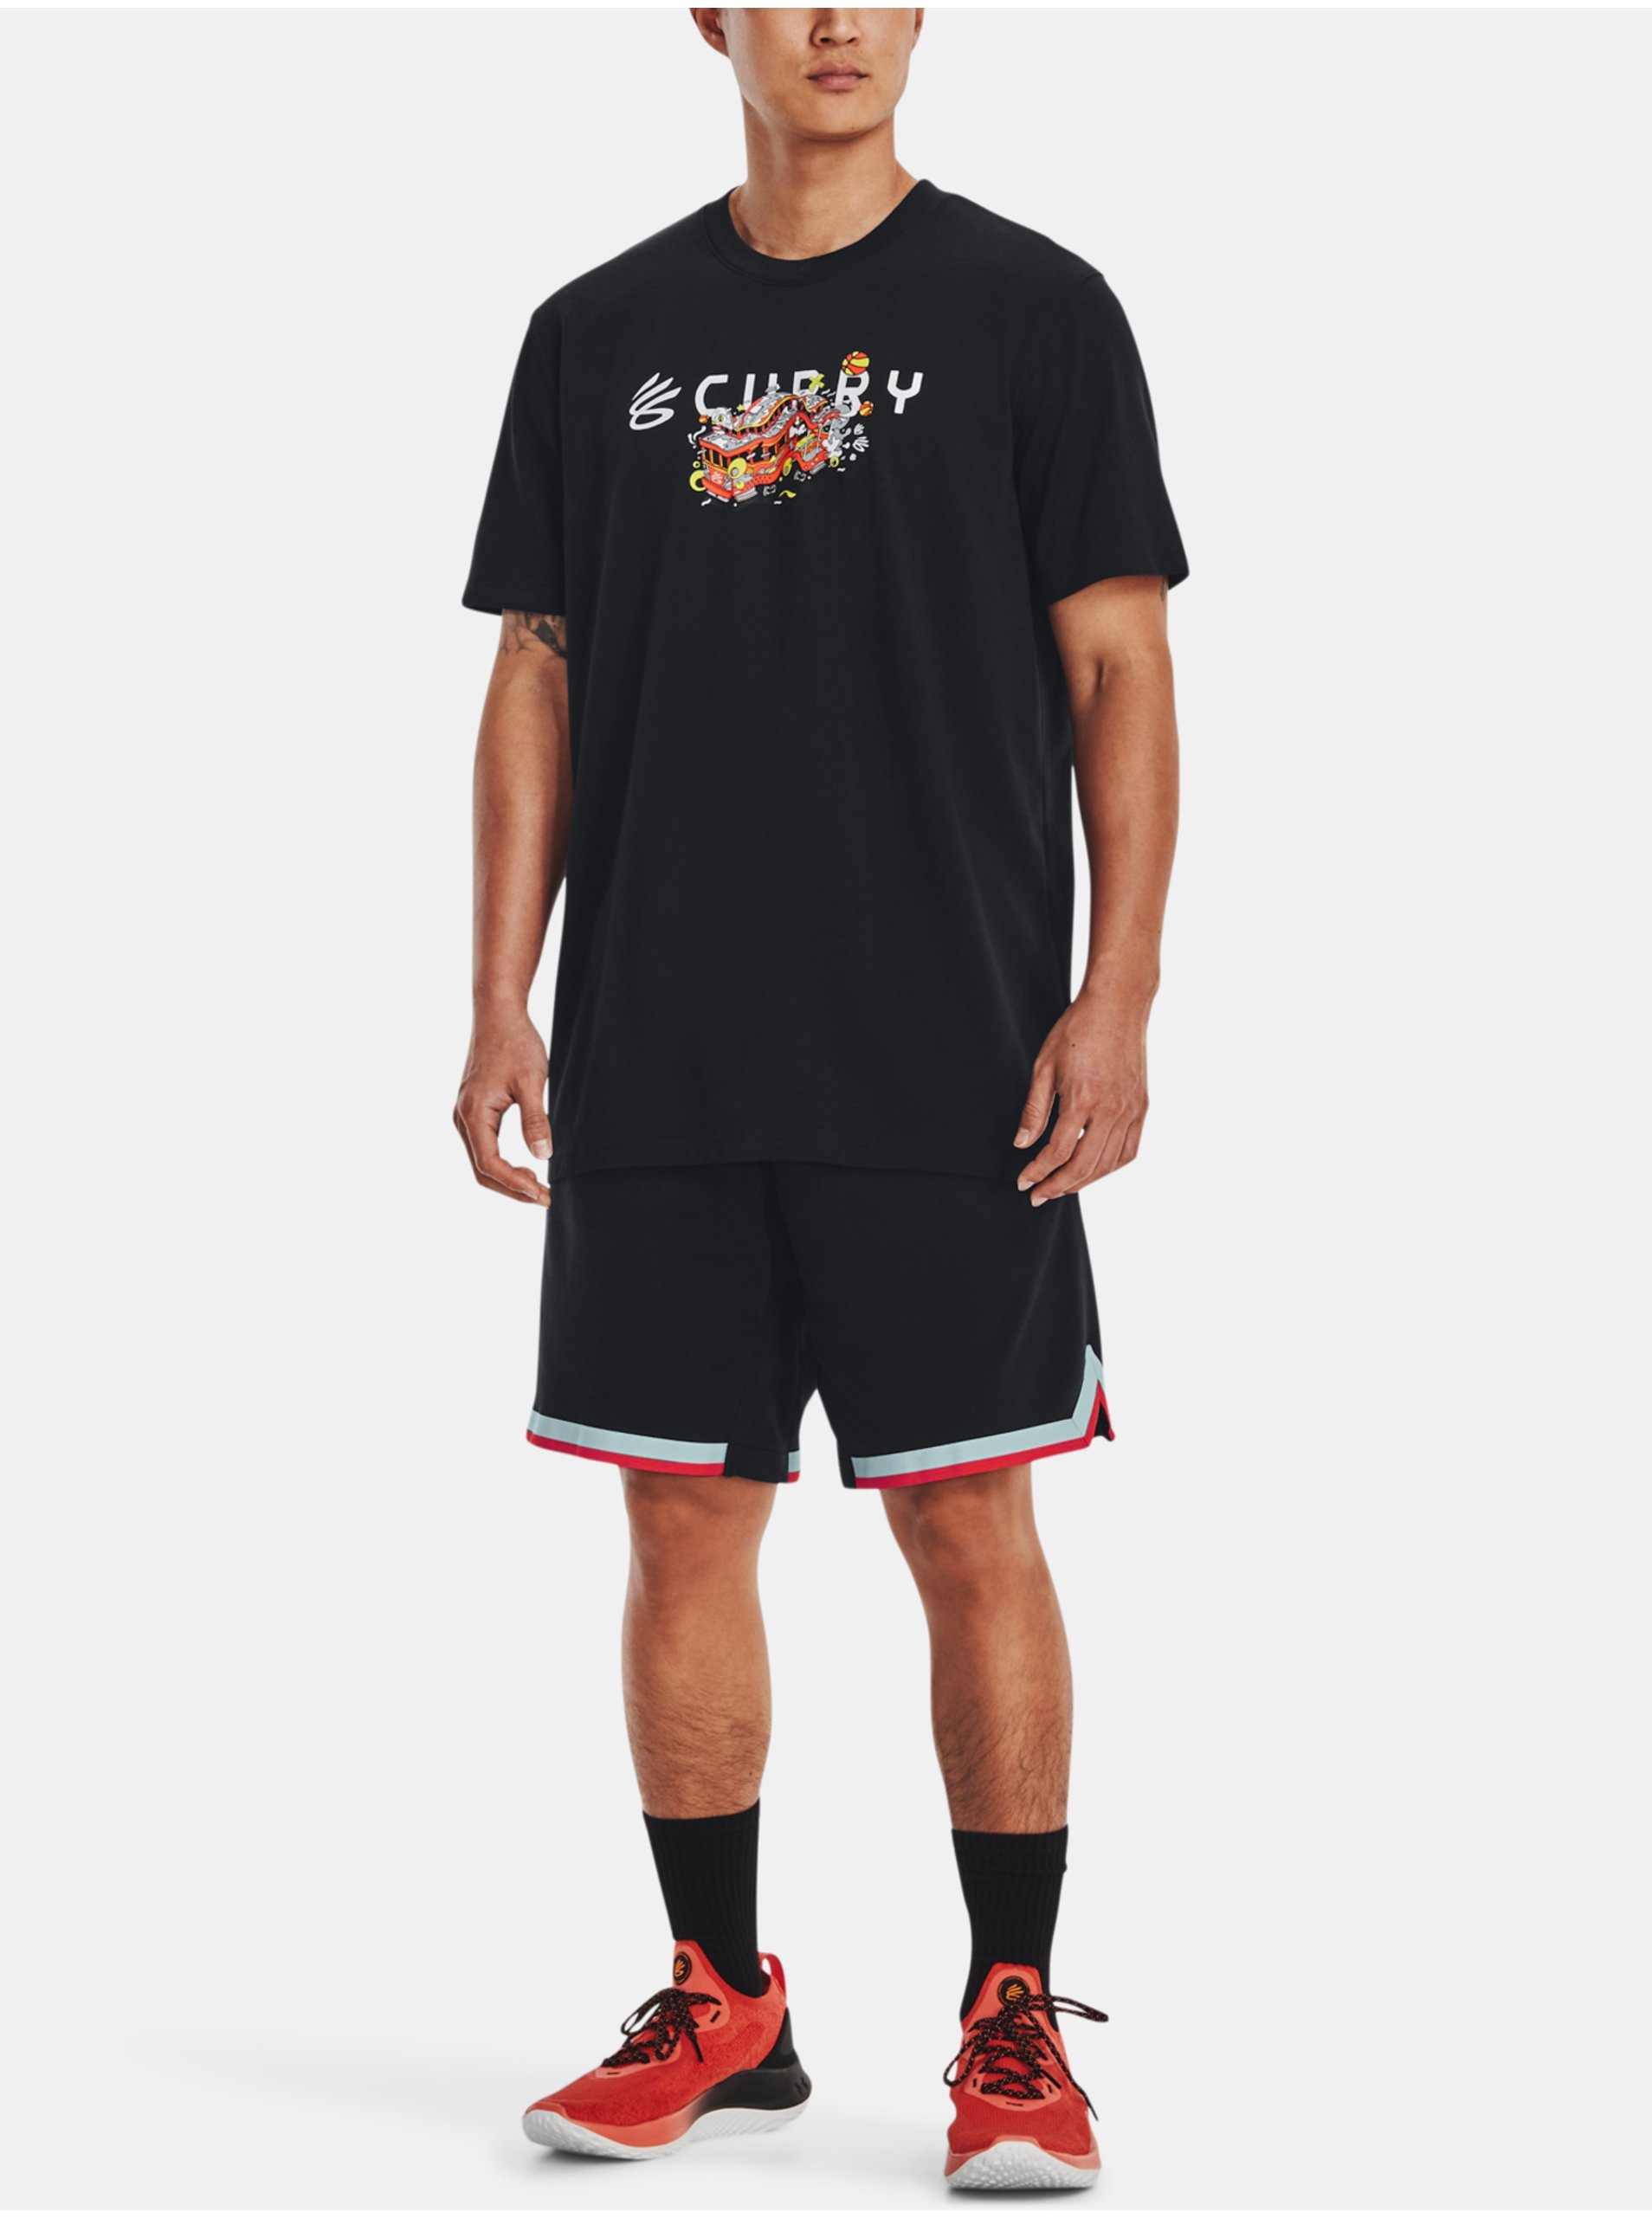 Černé pánské sportovní tričko Under Armour Curry Trolly